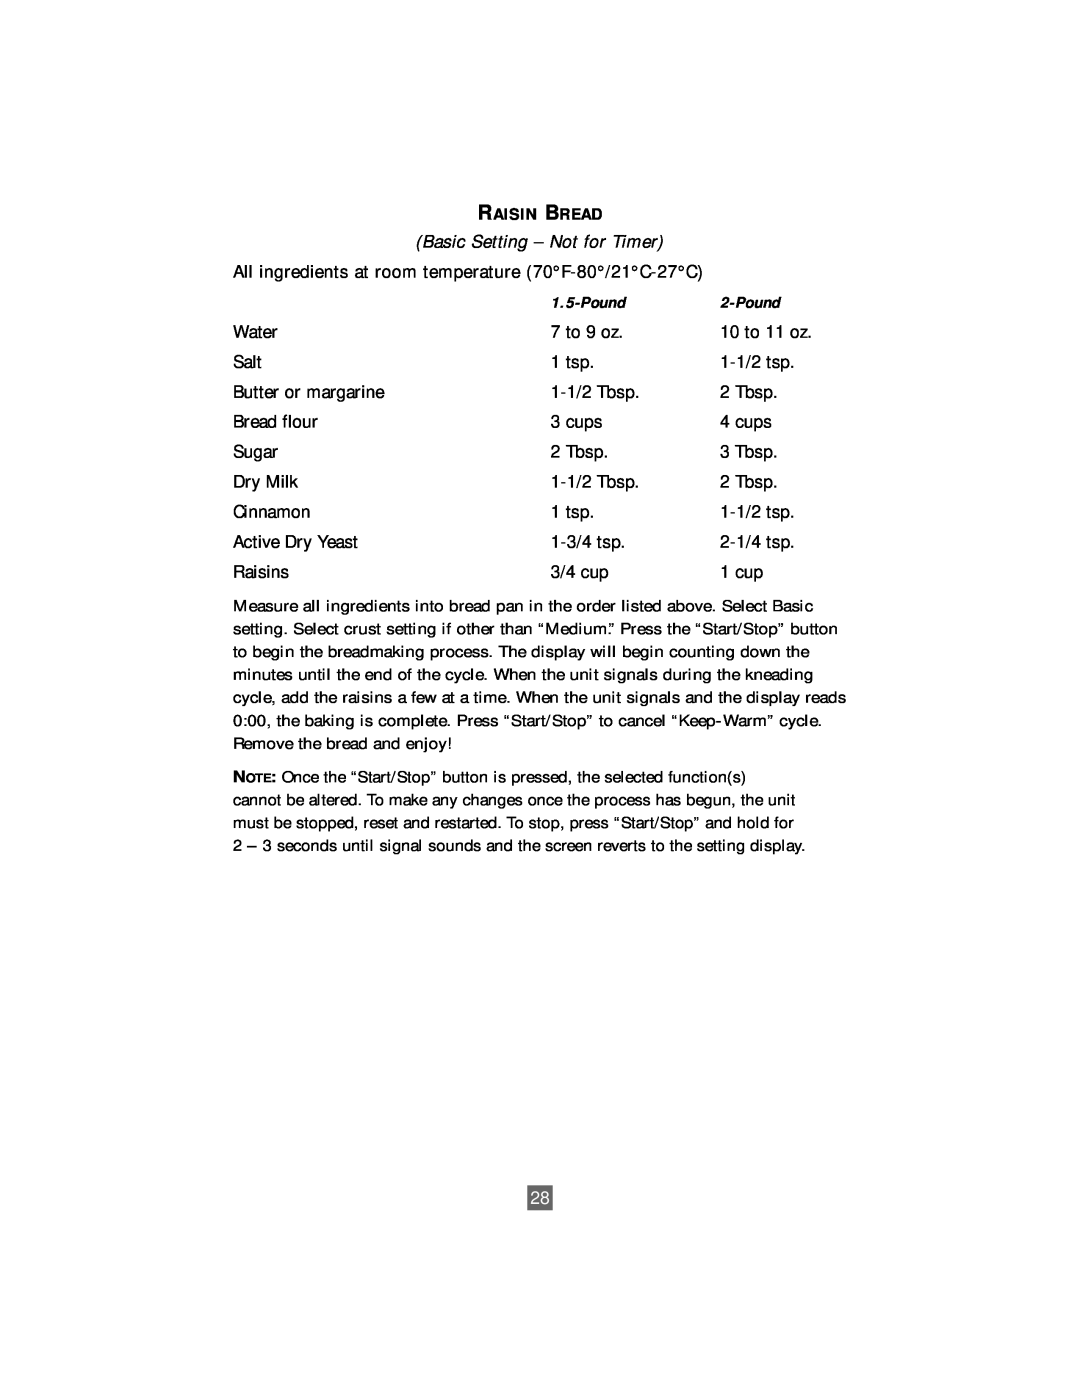 Oster P. N. 101017 manual Basic Setting - Not for Timer, Raisin Bread 